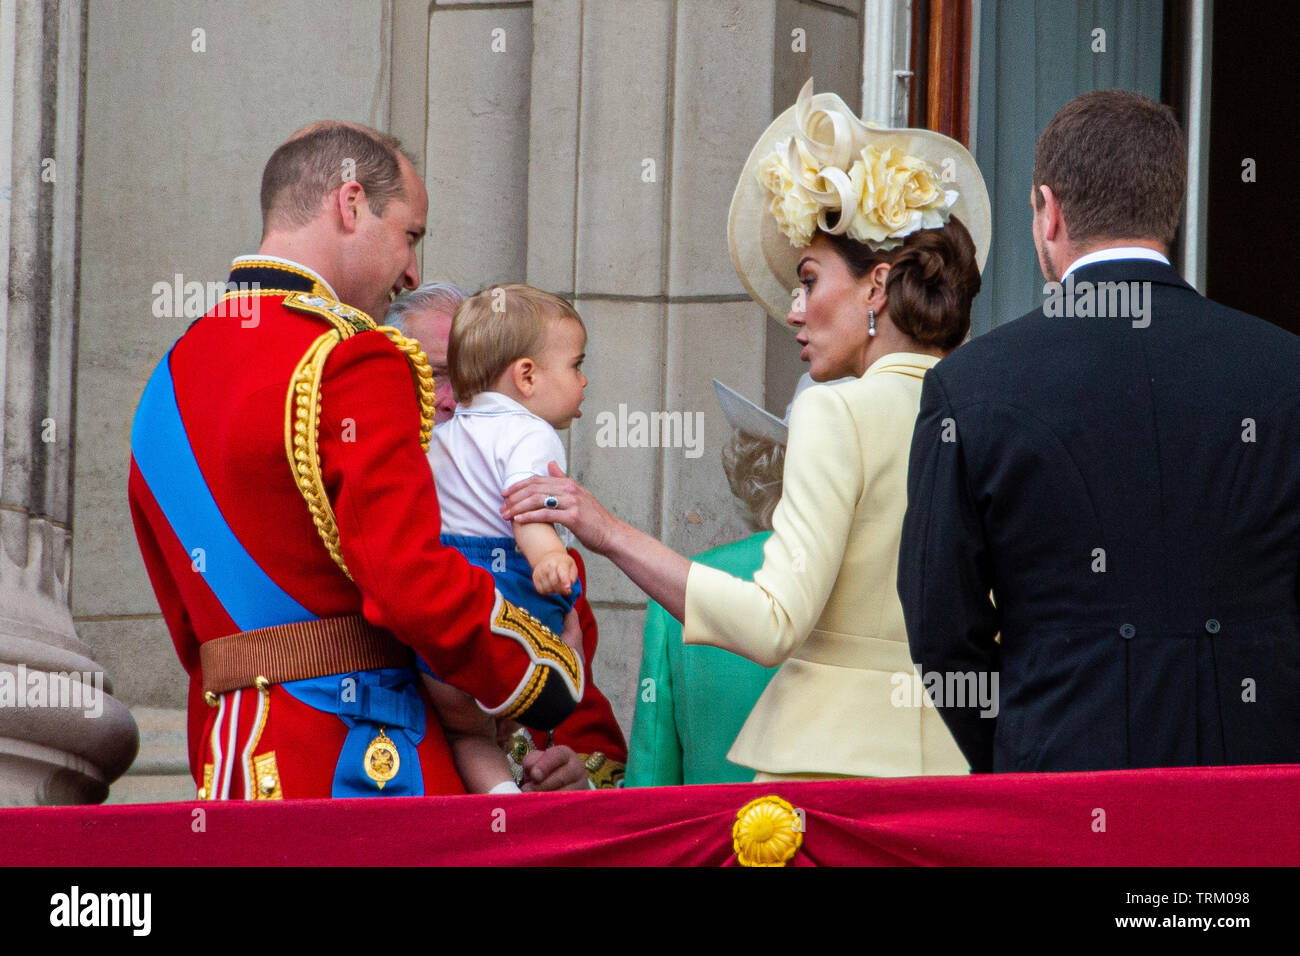 Photo datée du 8 juin montre le Prince William, Catherine duchesse de Cambridge, le Prince Louis, à la parade la couleur à Londres aujourd'hui. L'anniversaire officiel de la Reine a été marquée avec la parade annuelle de la parade de couleur. Elle a été rejoint par des membres de sa famille et des milliers de spectateurs à regarder l'écran en Horse Guards Parade dans Whitehall. Le Prince de Galles, la duchesse de Cornwall, le duc et la duchesse de Cambridge et le duc et la duchesse de Sussex est allé(e) à tous. La reine a célébré son 93e anniversaire en avril. Les colonels royale - le Prince de Galles, le colonel de la Garde galloise Banque D'Images